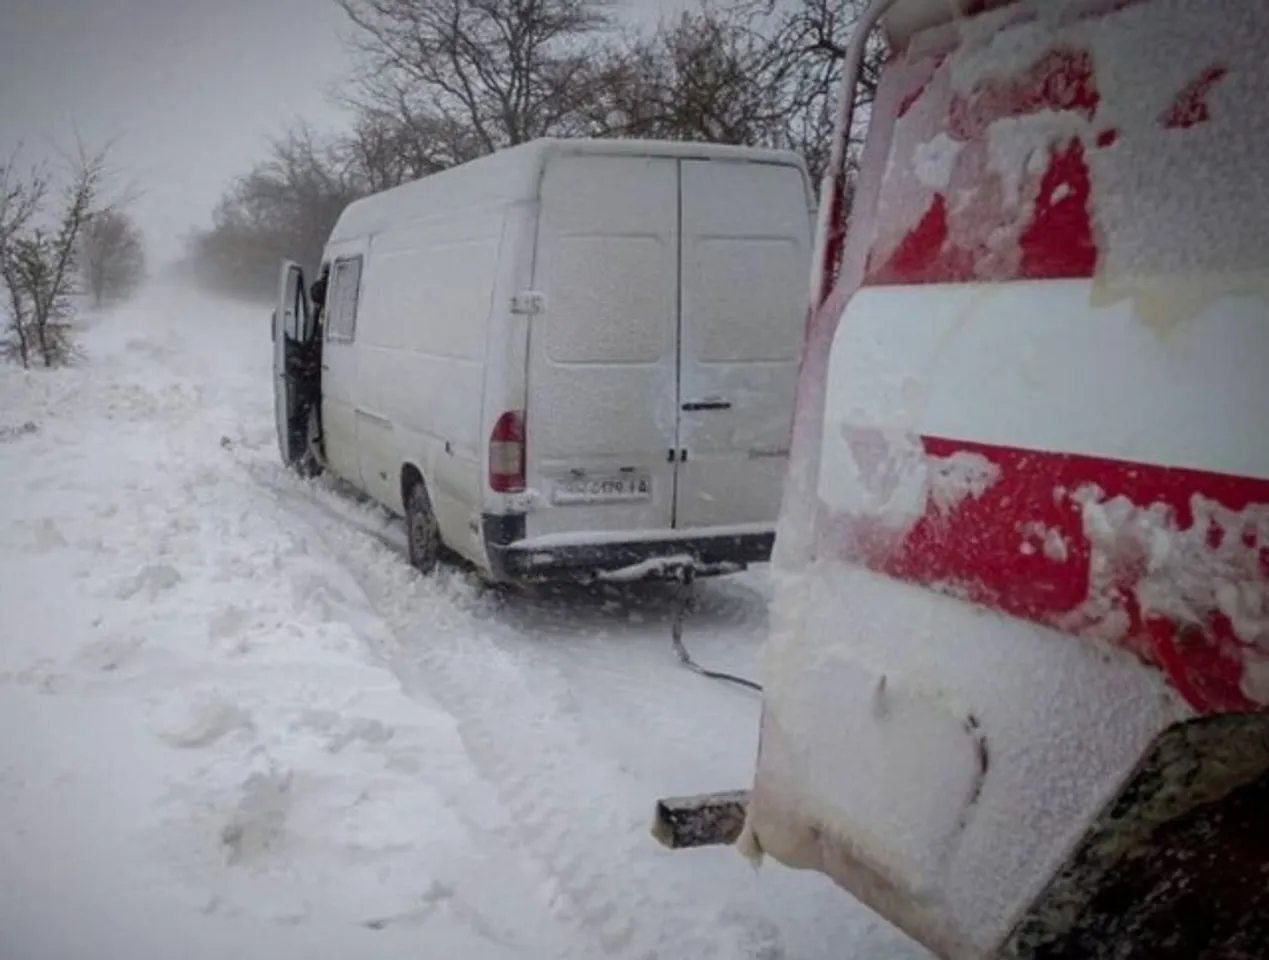 Snowstorm kills eight in Ukraine and Moldova